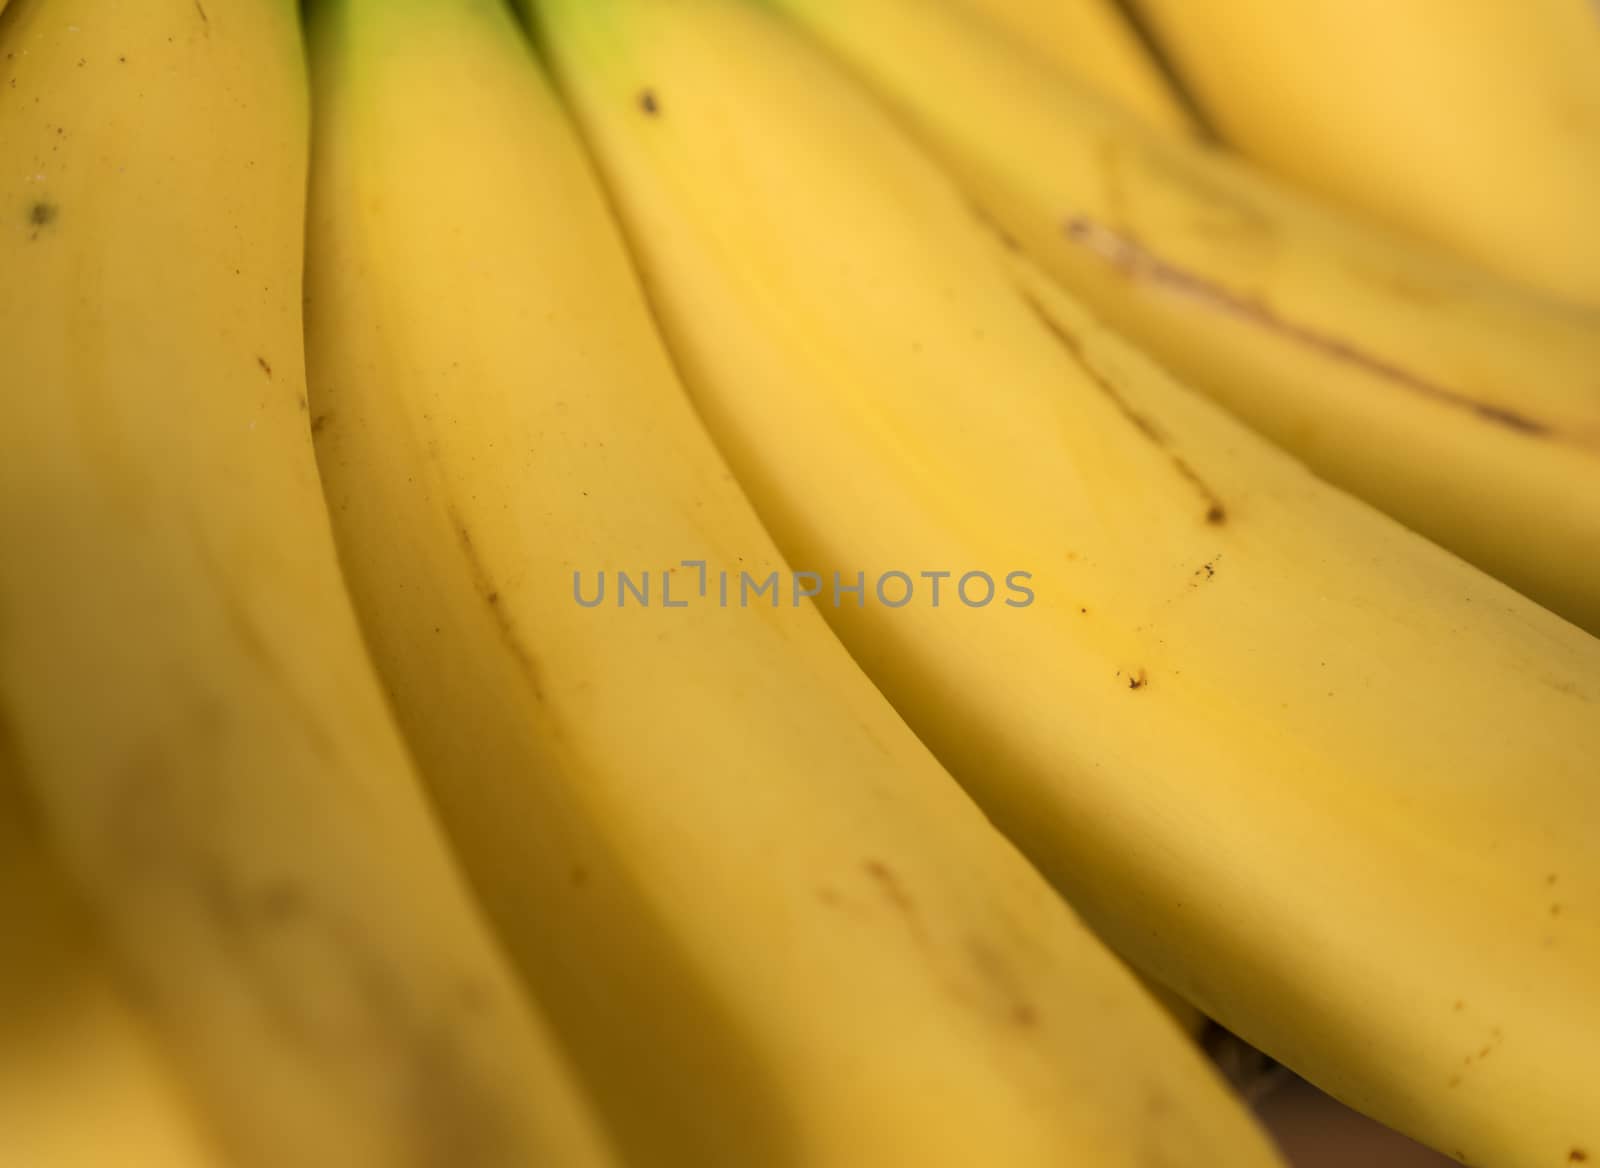 Banana in skin close up by azamshah72